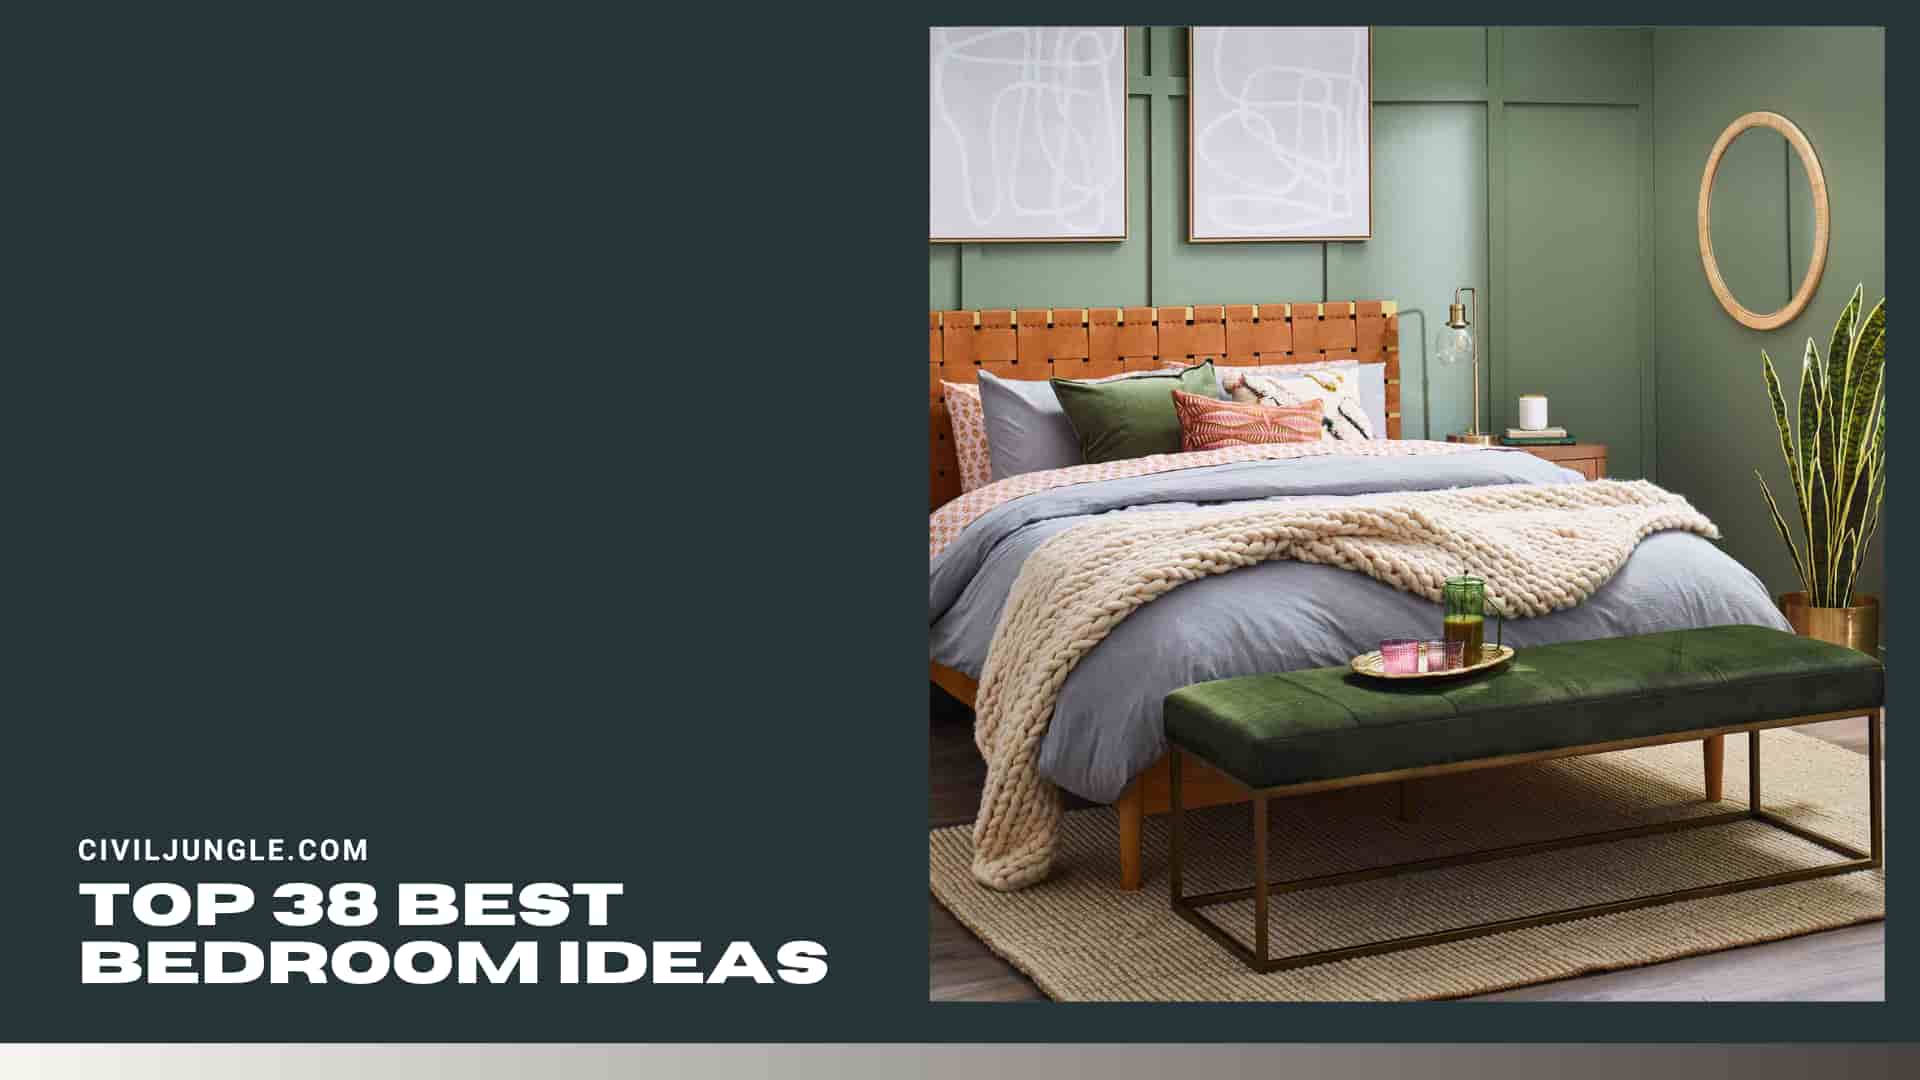 Top 38 Best Bedroom Ideas